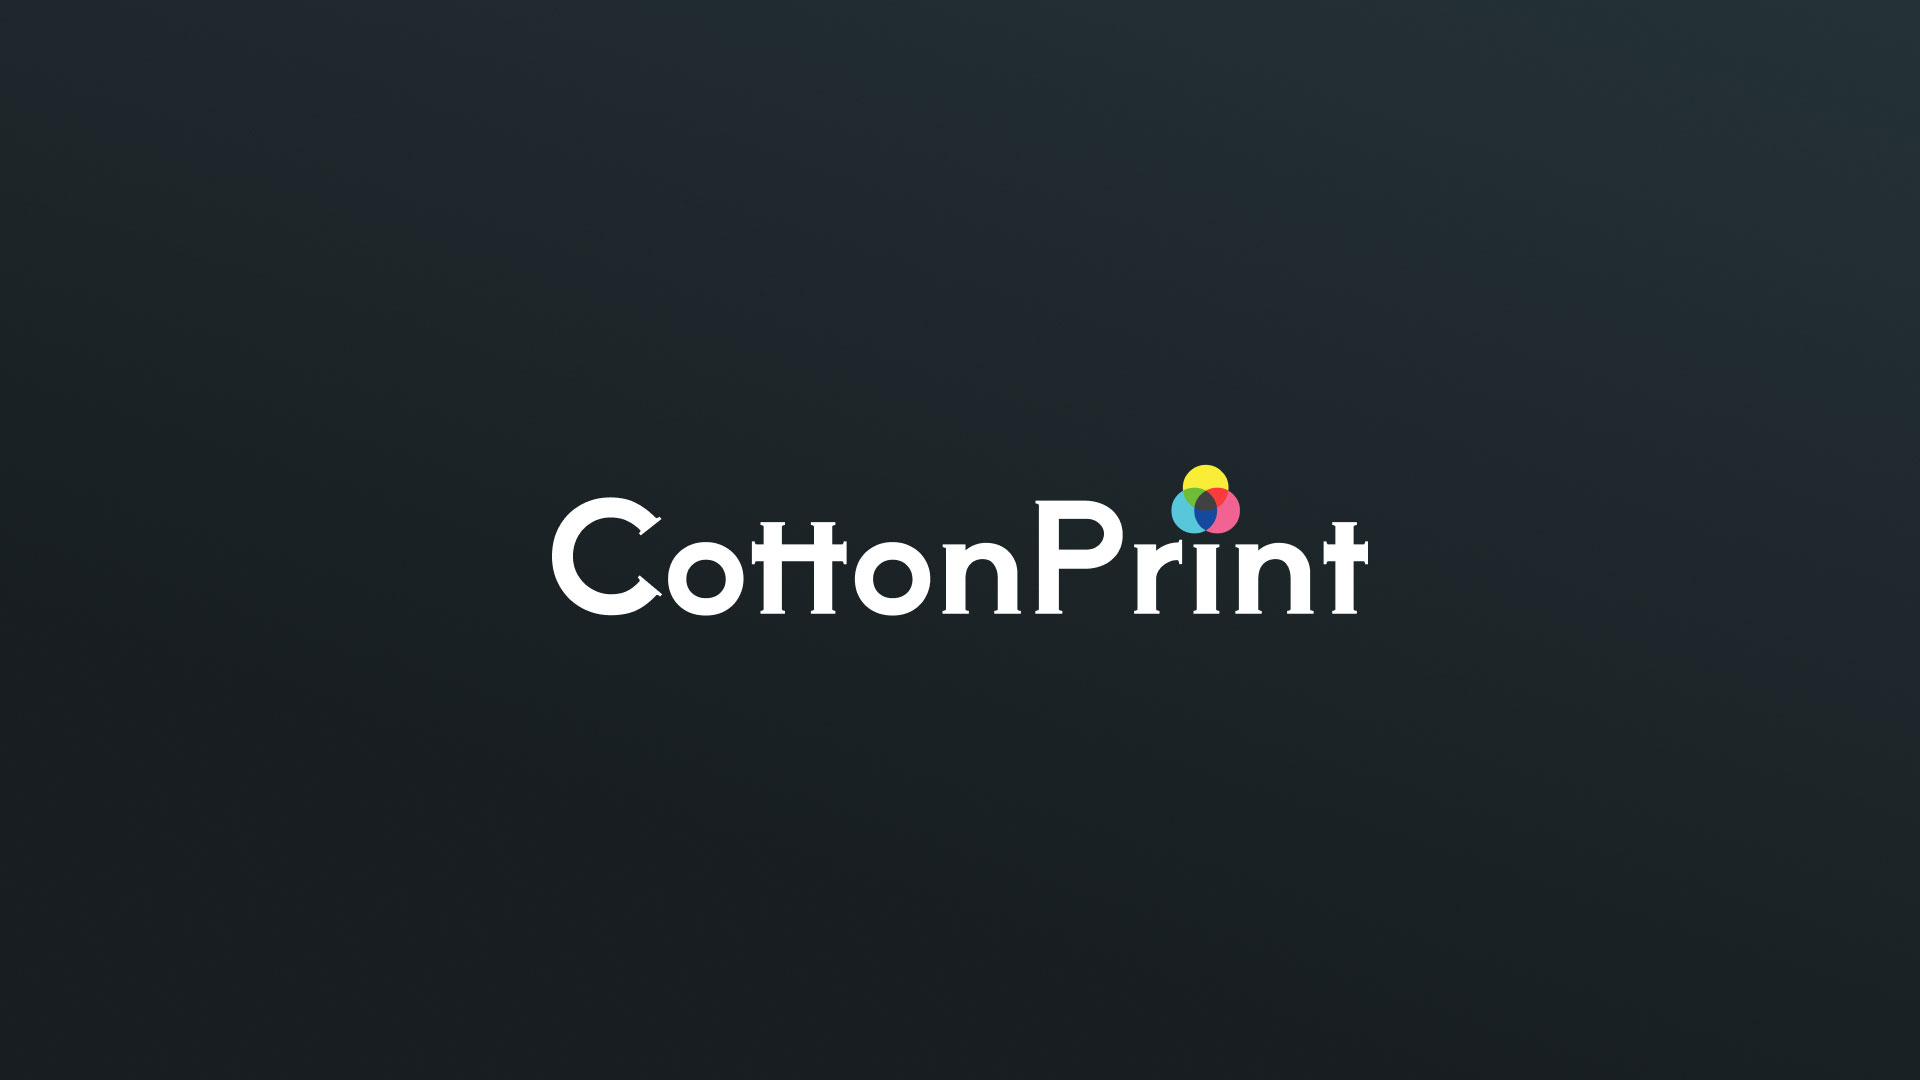 Создание логотипа компании «CottonPrint» в 